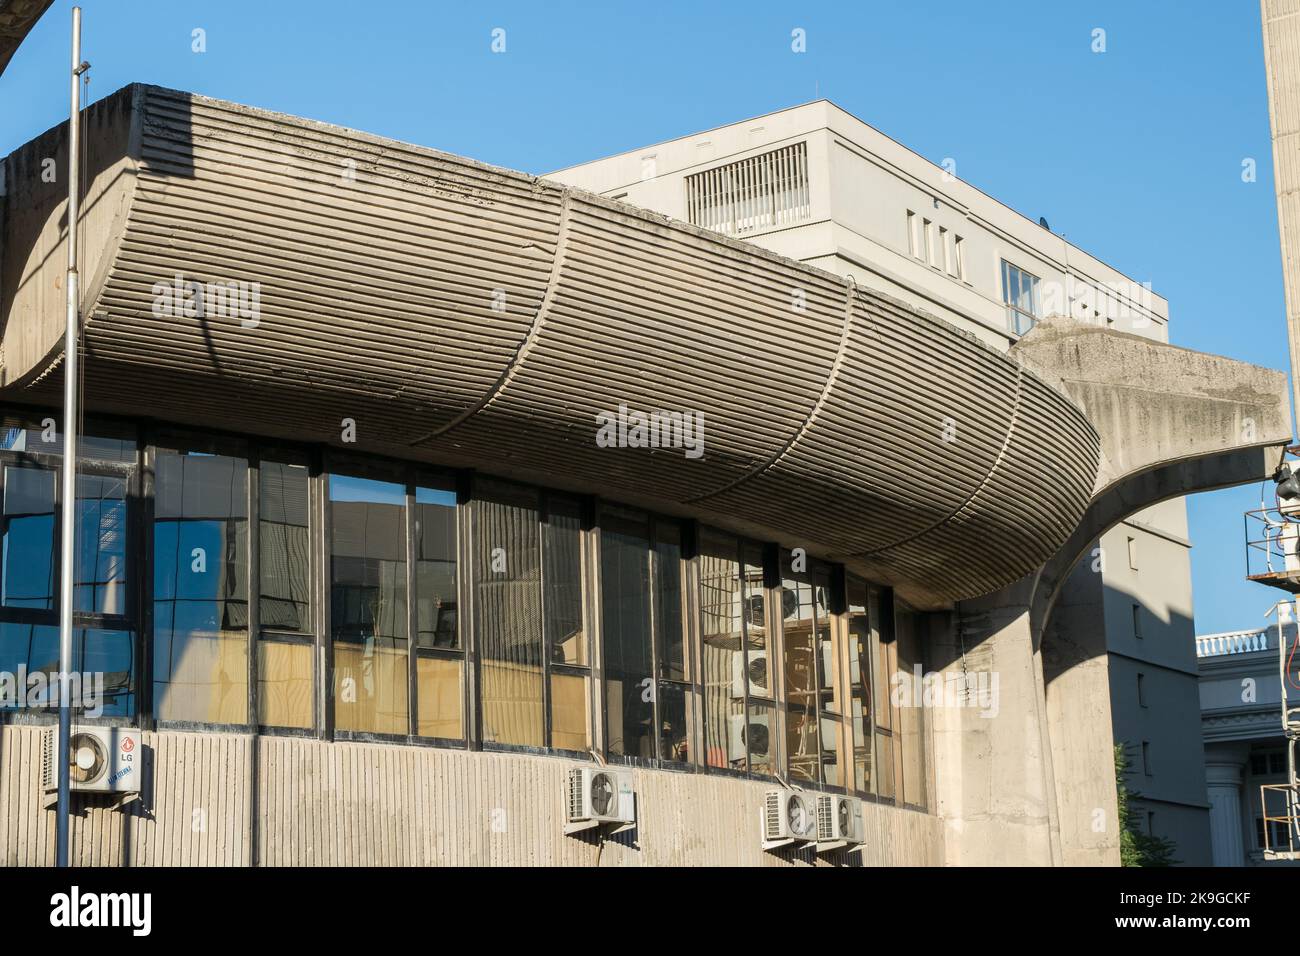 Caratteristiche dell'ufficio postale centrale di Skopje, Macedonia settentrionale, esempio di brutalismo nell'architettura, o edificio brutalista in cemento nell'ex Jugoslavia Foto Stock